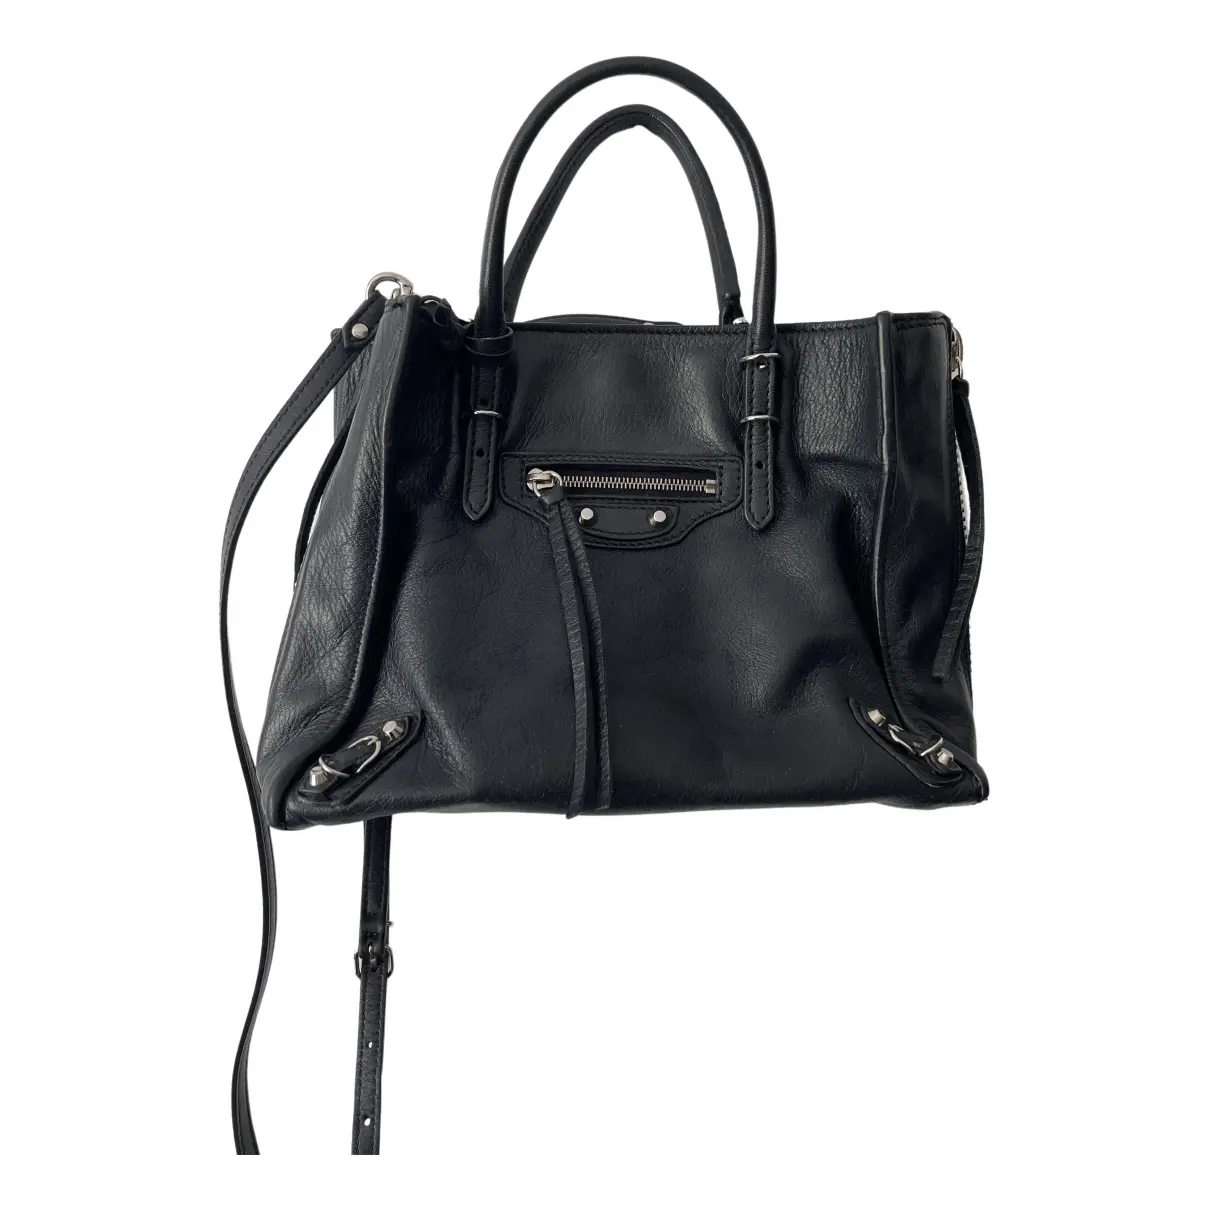 Neo Classic leather bag Balenciaga